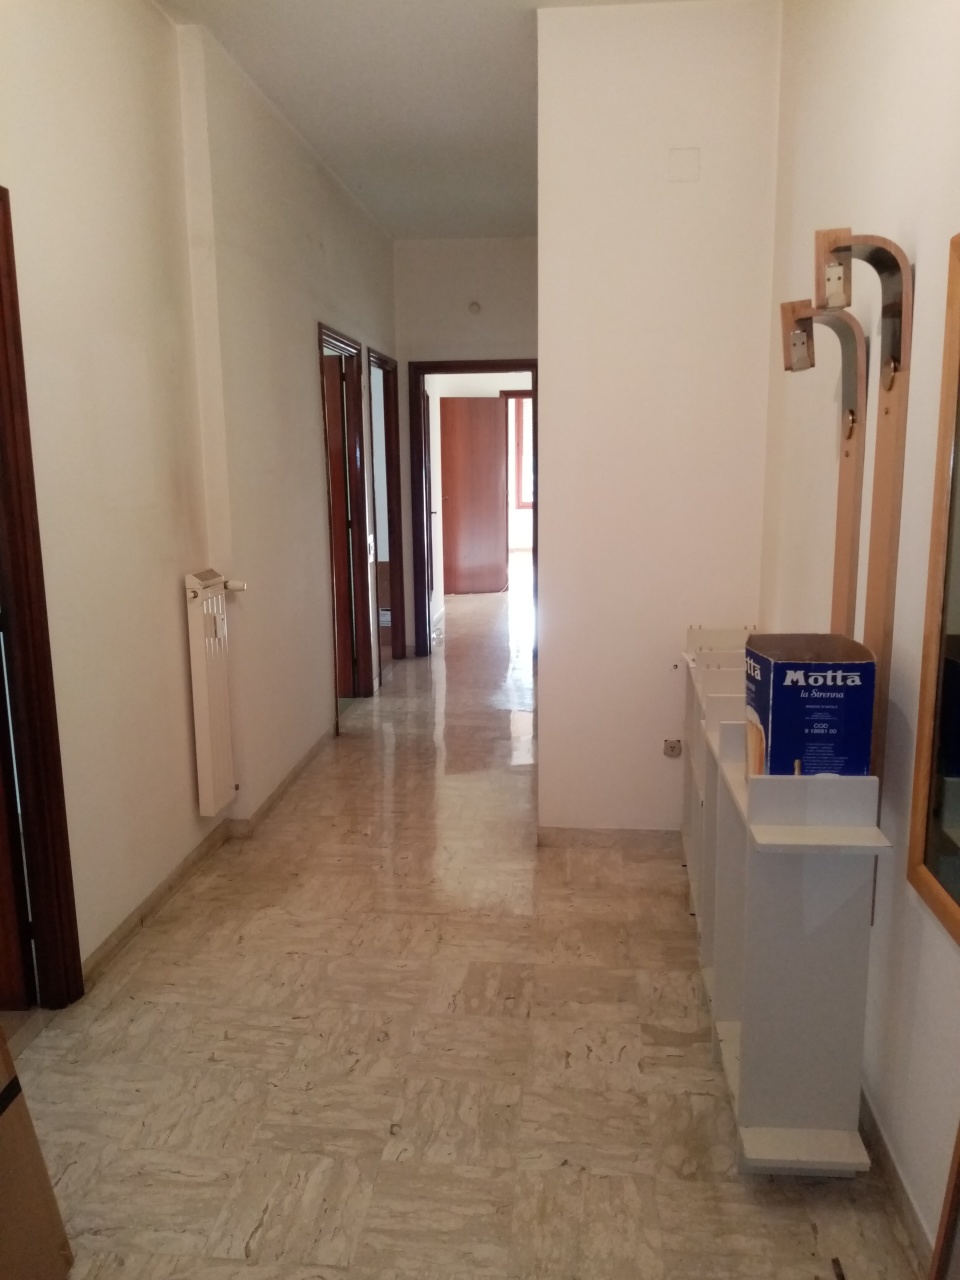 Appartamento in vendita a Terni, 4 locali, prezzo € 115.000 | PortaleAgenzieImmobiliari.it